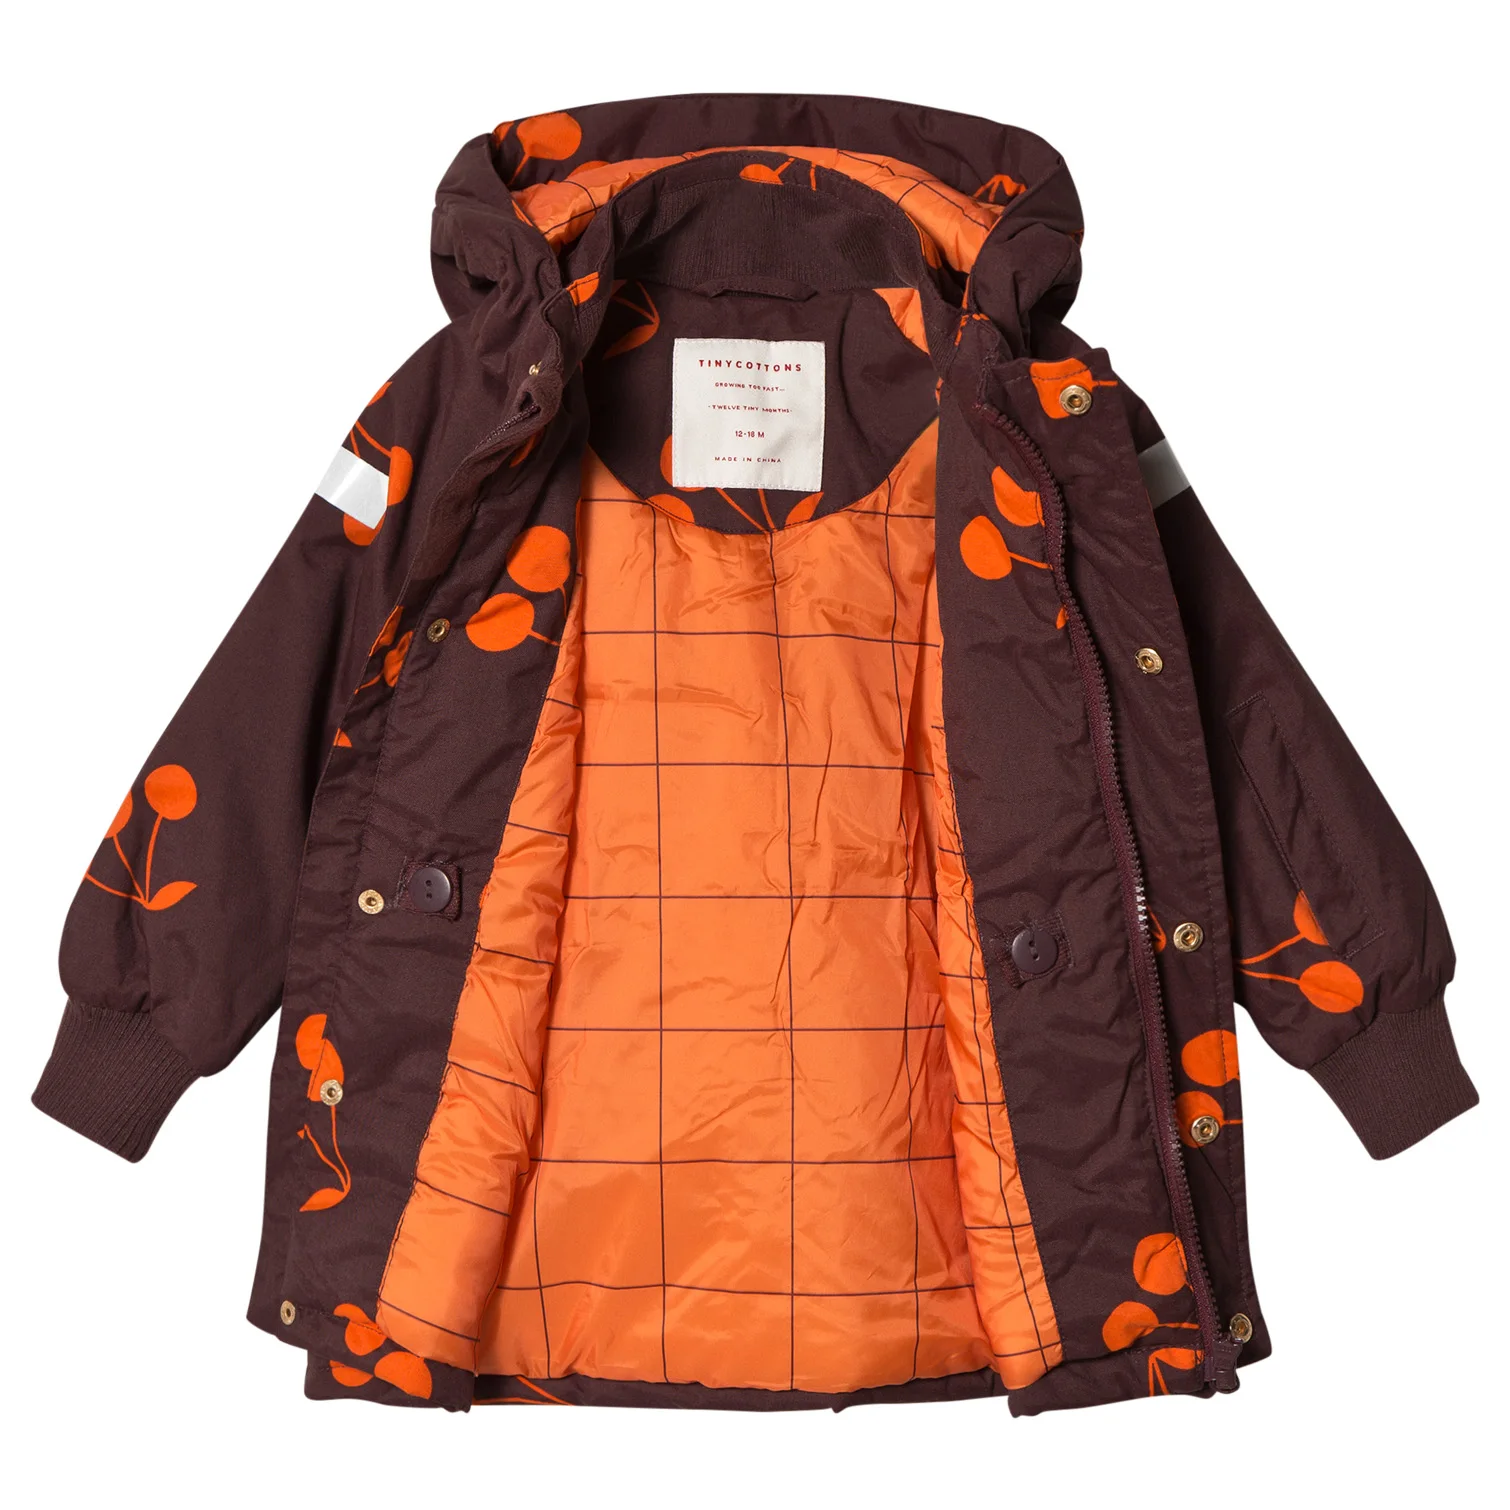 INS/популярные детские куртки, пальто Одежда для маленьких мальчиков, одежда для маленьких девочек детский комбинезон с вишнями, одежда для мальчиков Одежда для девочек зимняя водонепроницаемая одежда